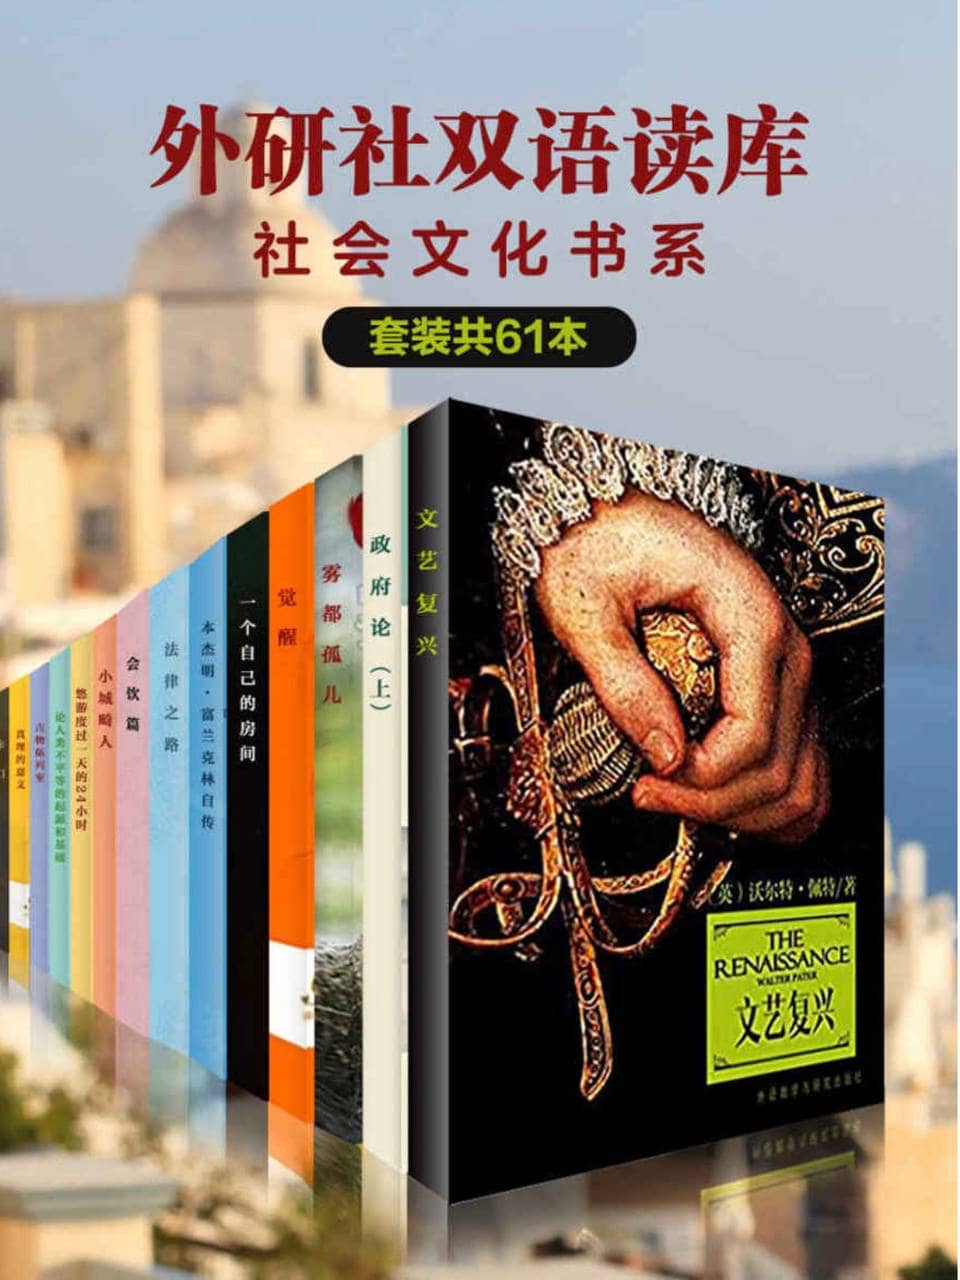 《外研社双语读库·社会文化书系》（套装共61本） [EPUB &amp; MOBI &amp; AZW3 电子书]